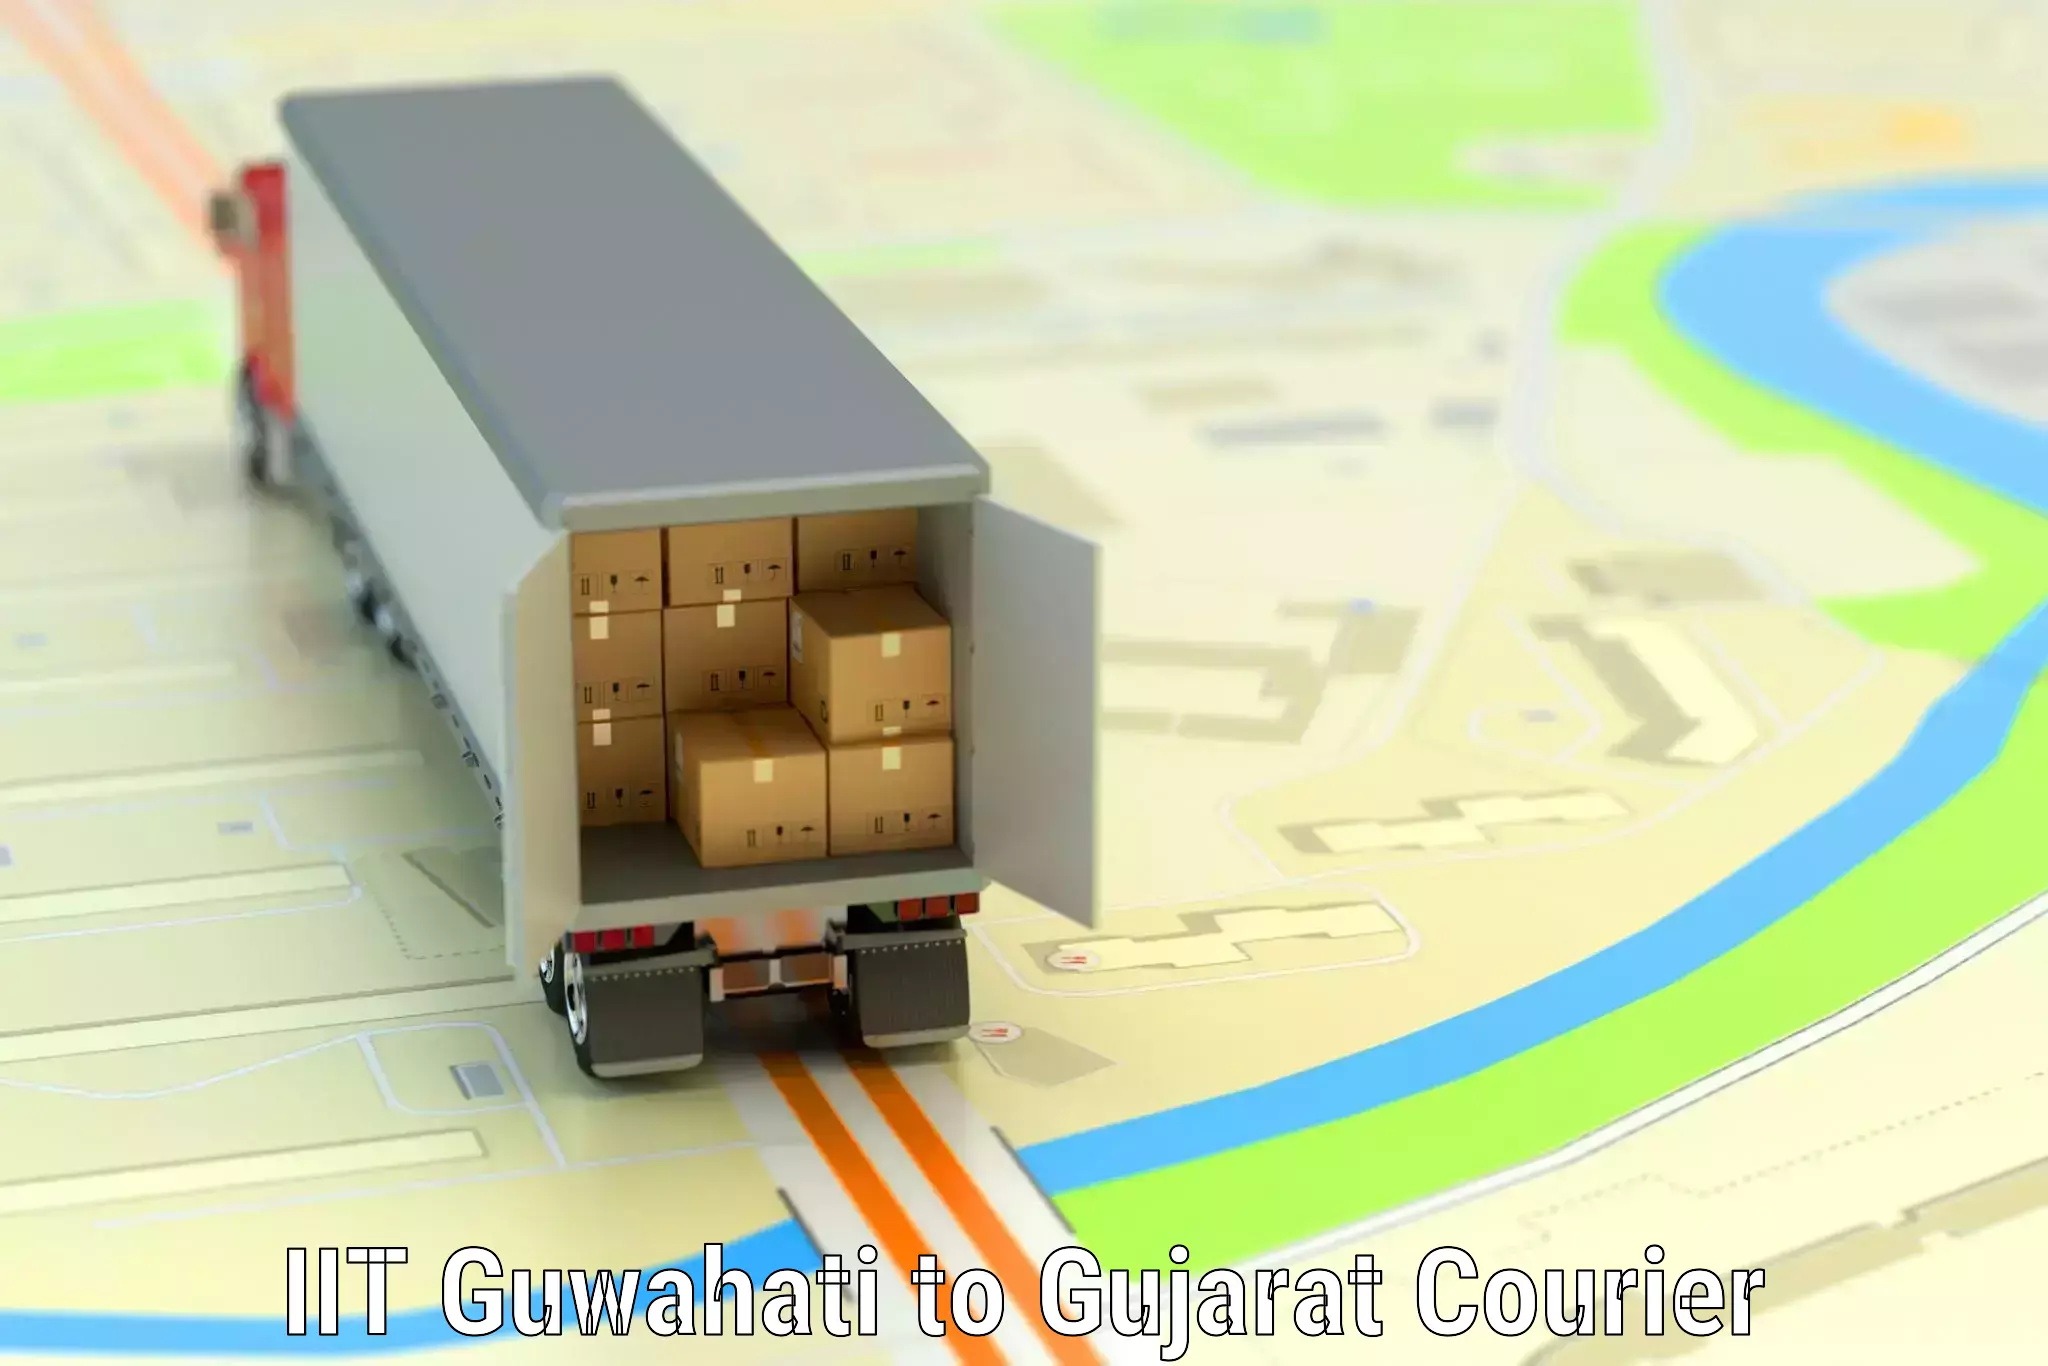 Luggage transport company IIT Guwahati to Gujarat